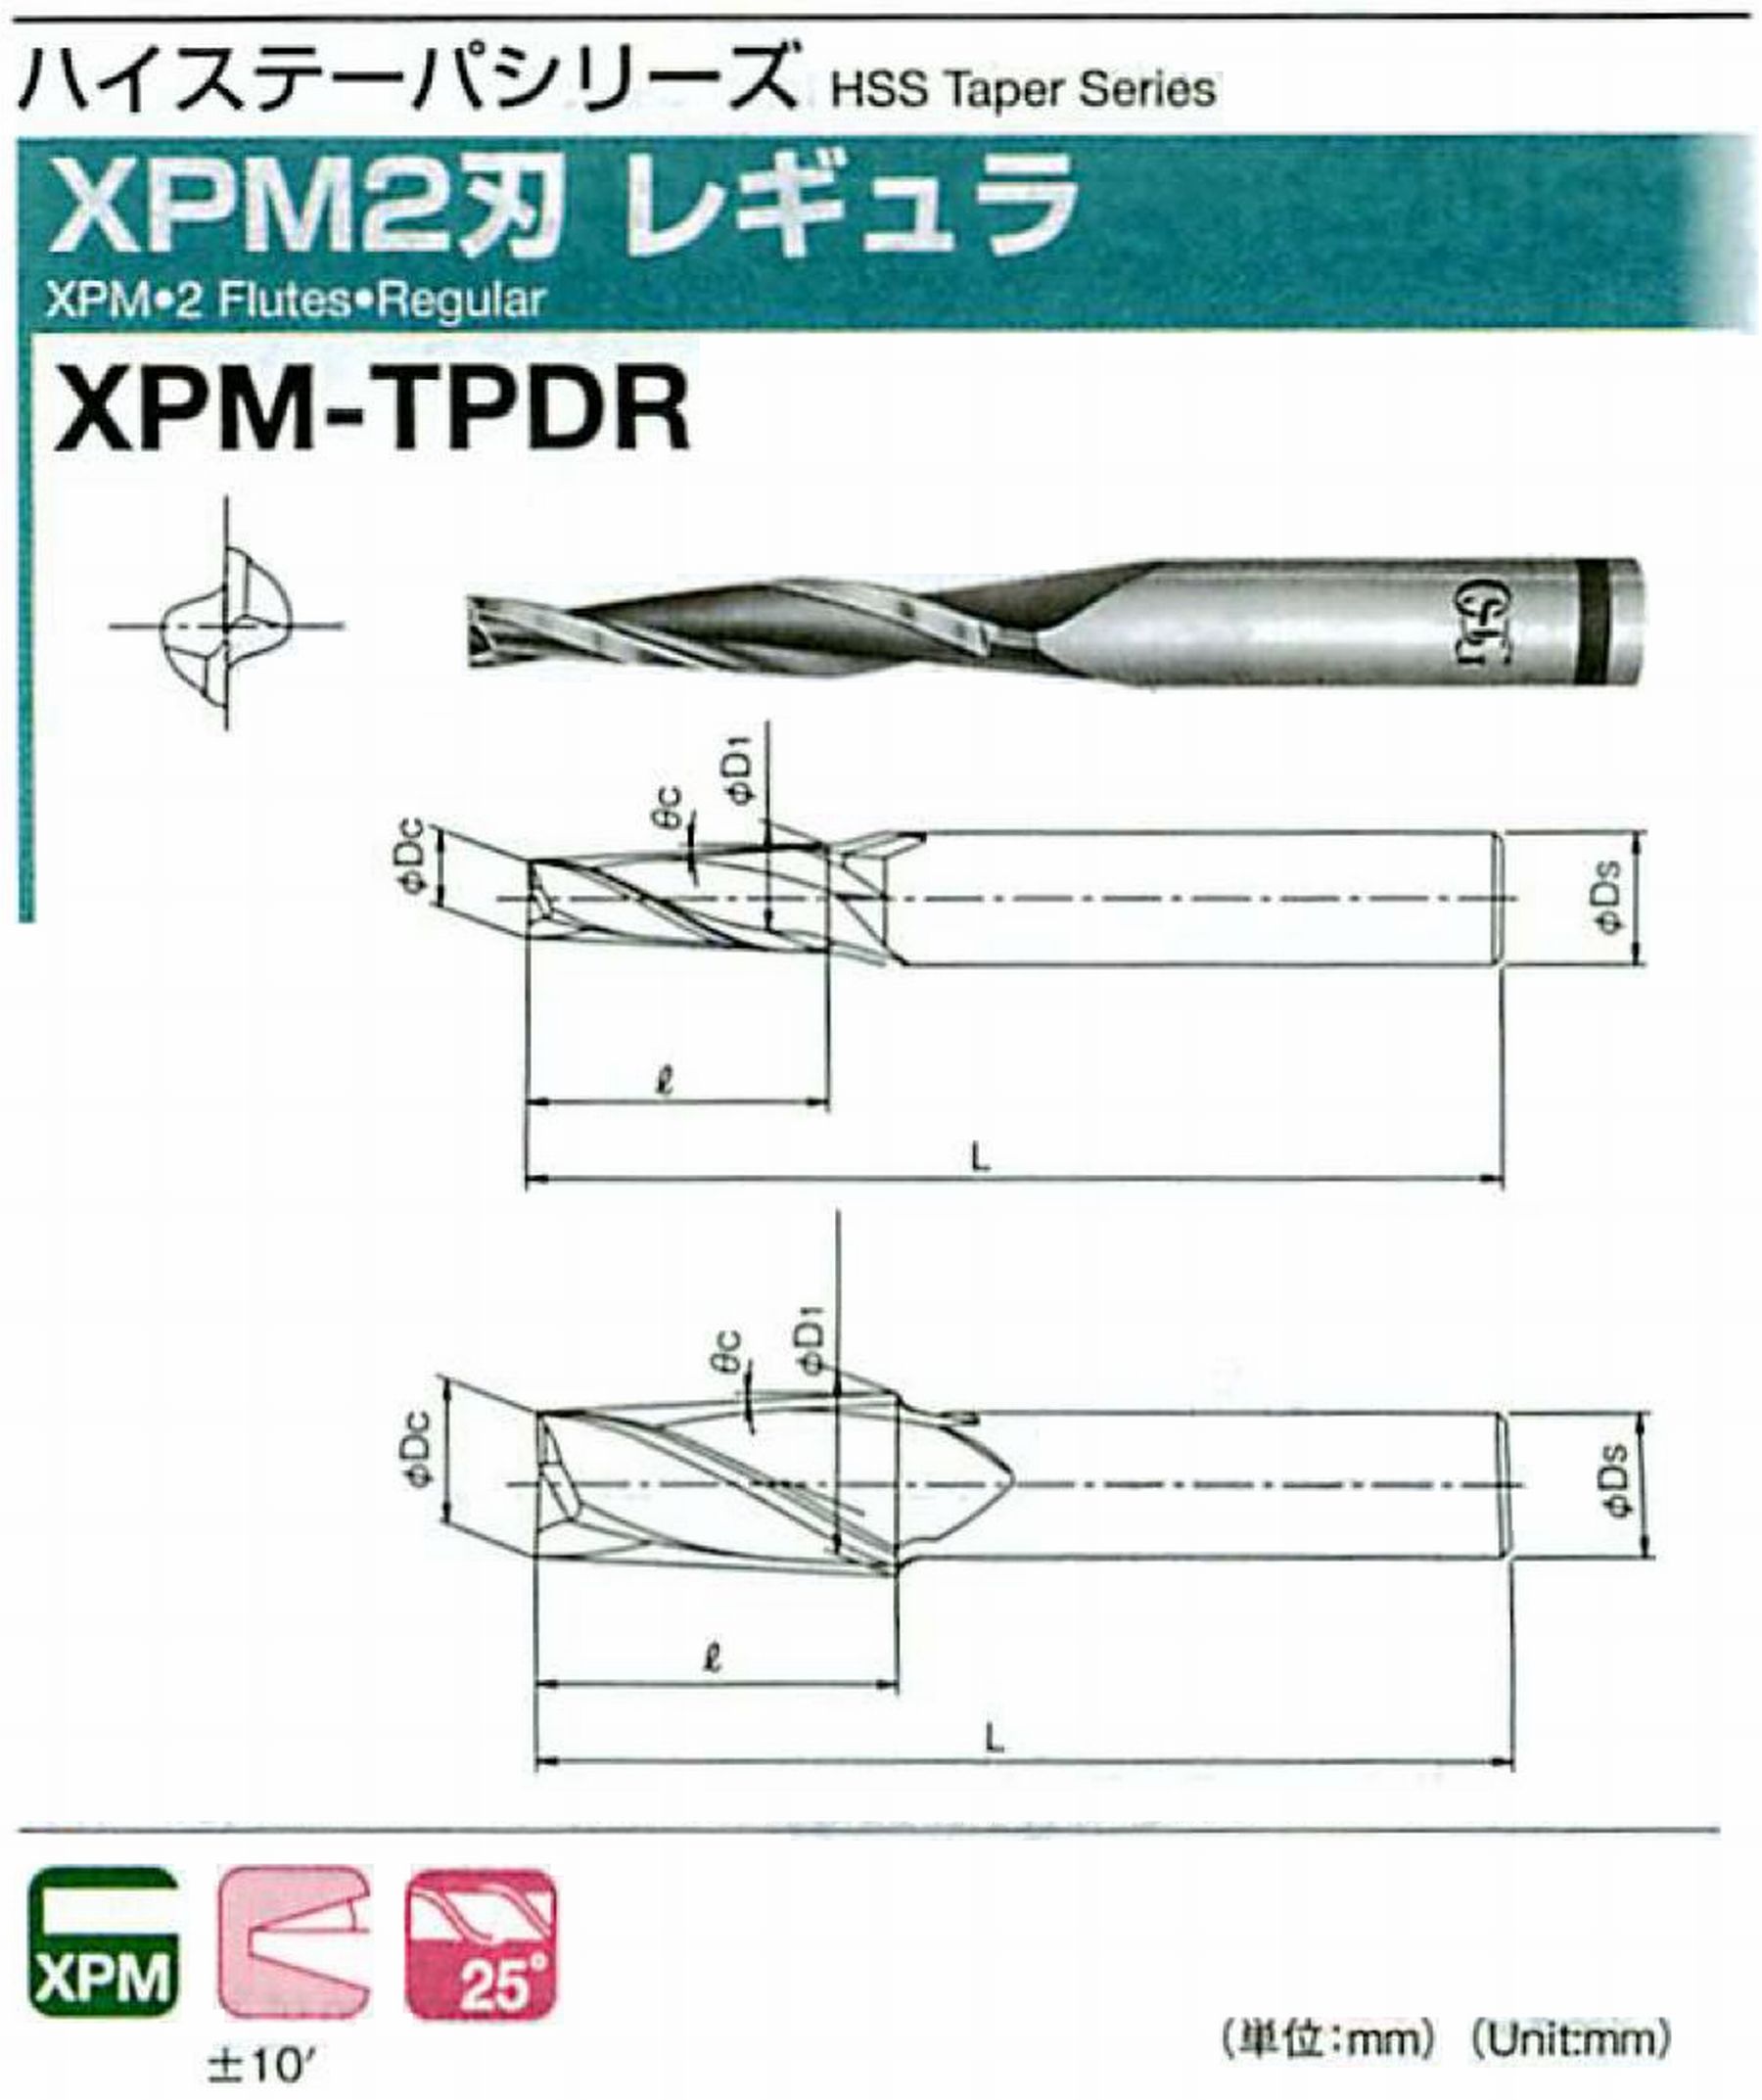 オーエスジー/OSG XPM2刃 レギュラ XPM-TPDR 外径×刃部テーパ半角12×0.5°全長91 刃長34 シャンク径12mm 大端径12.59